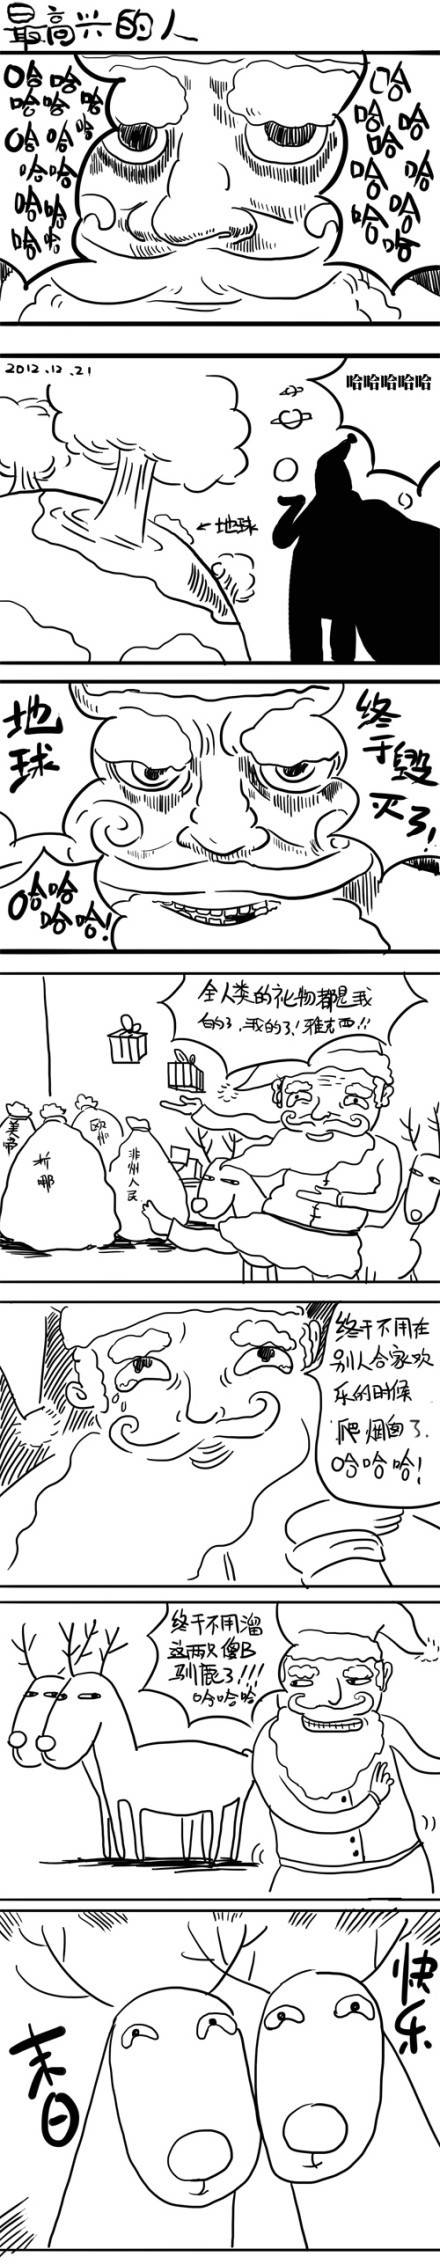 邪恶漫画爆笑囧图第347刊：人工呼吸